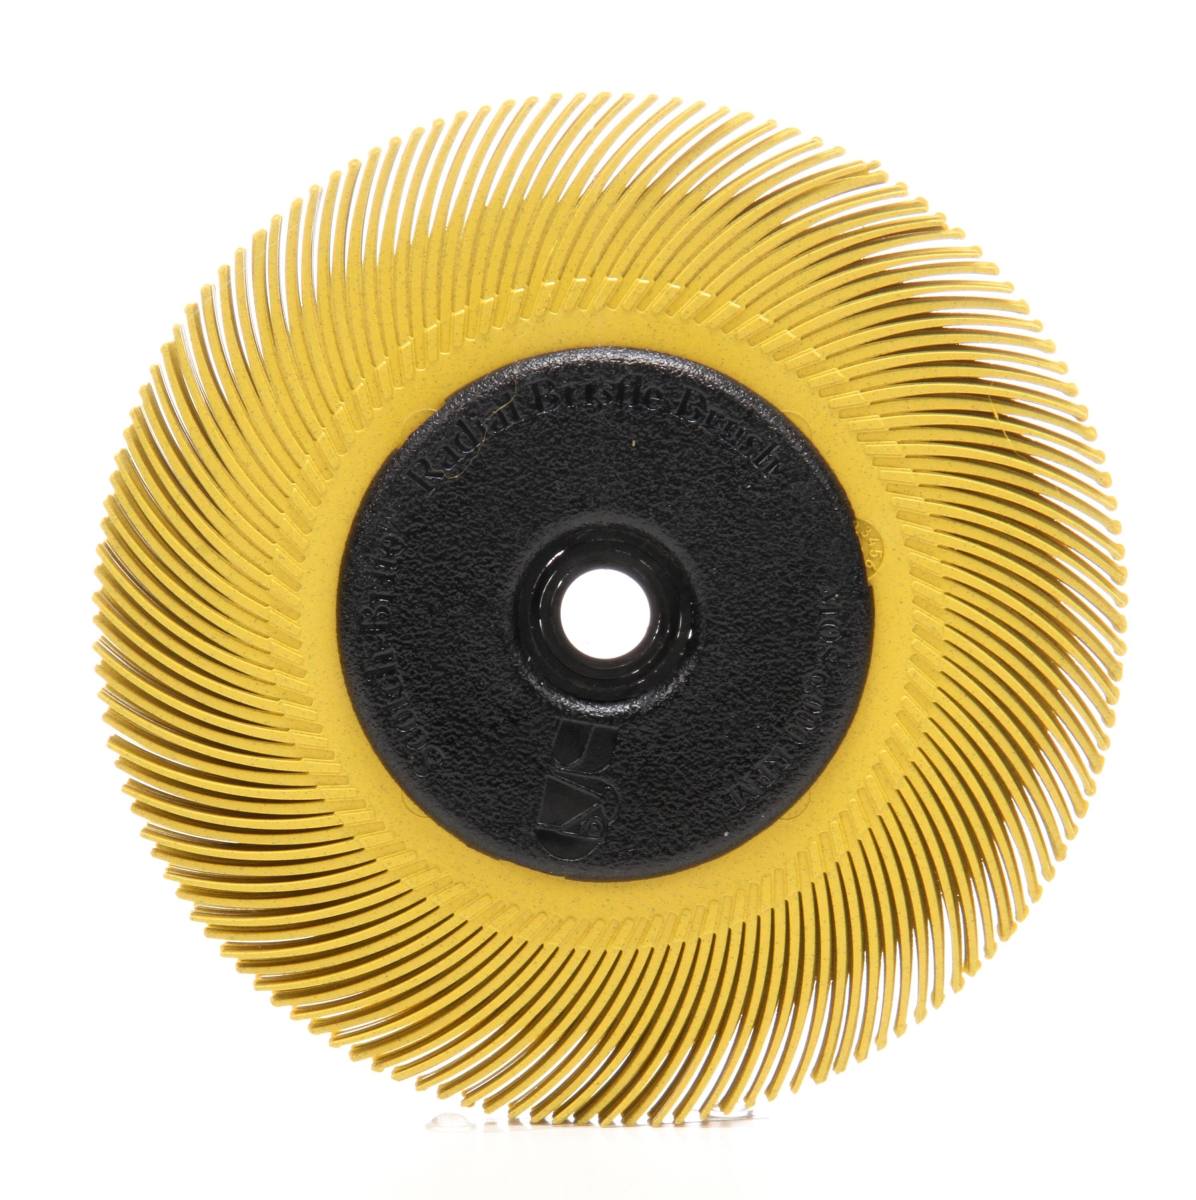 3M Scotch-Brite Disco a setole radiali BB-ZB con flangia, giallo, 193,5 mm, P80, tipo C #33129